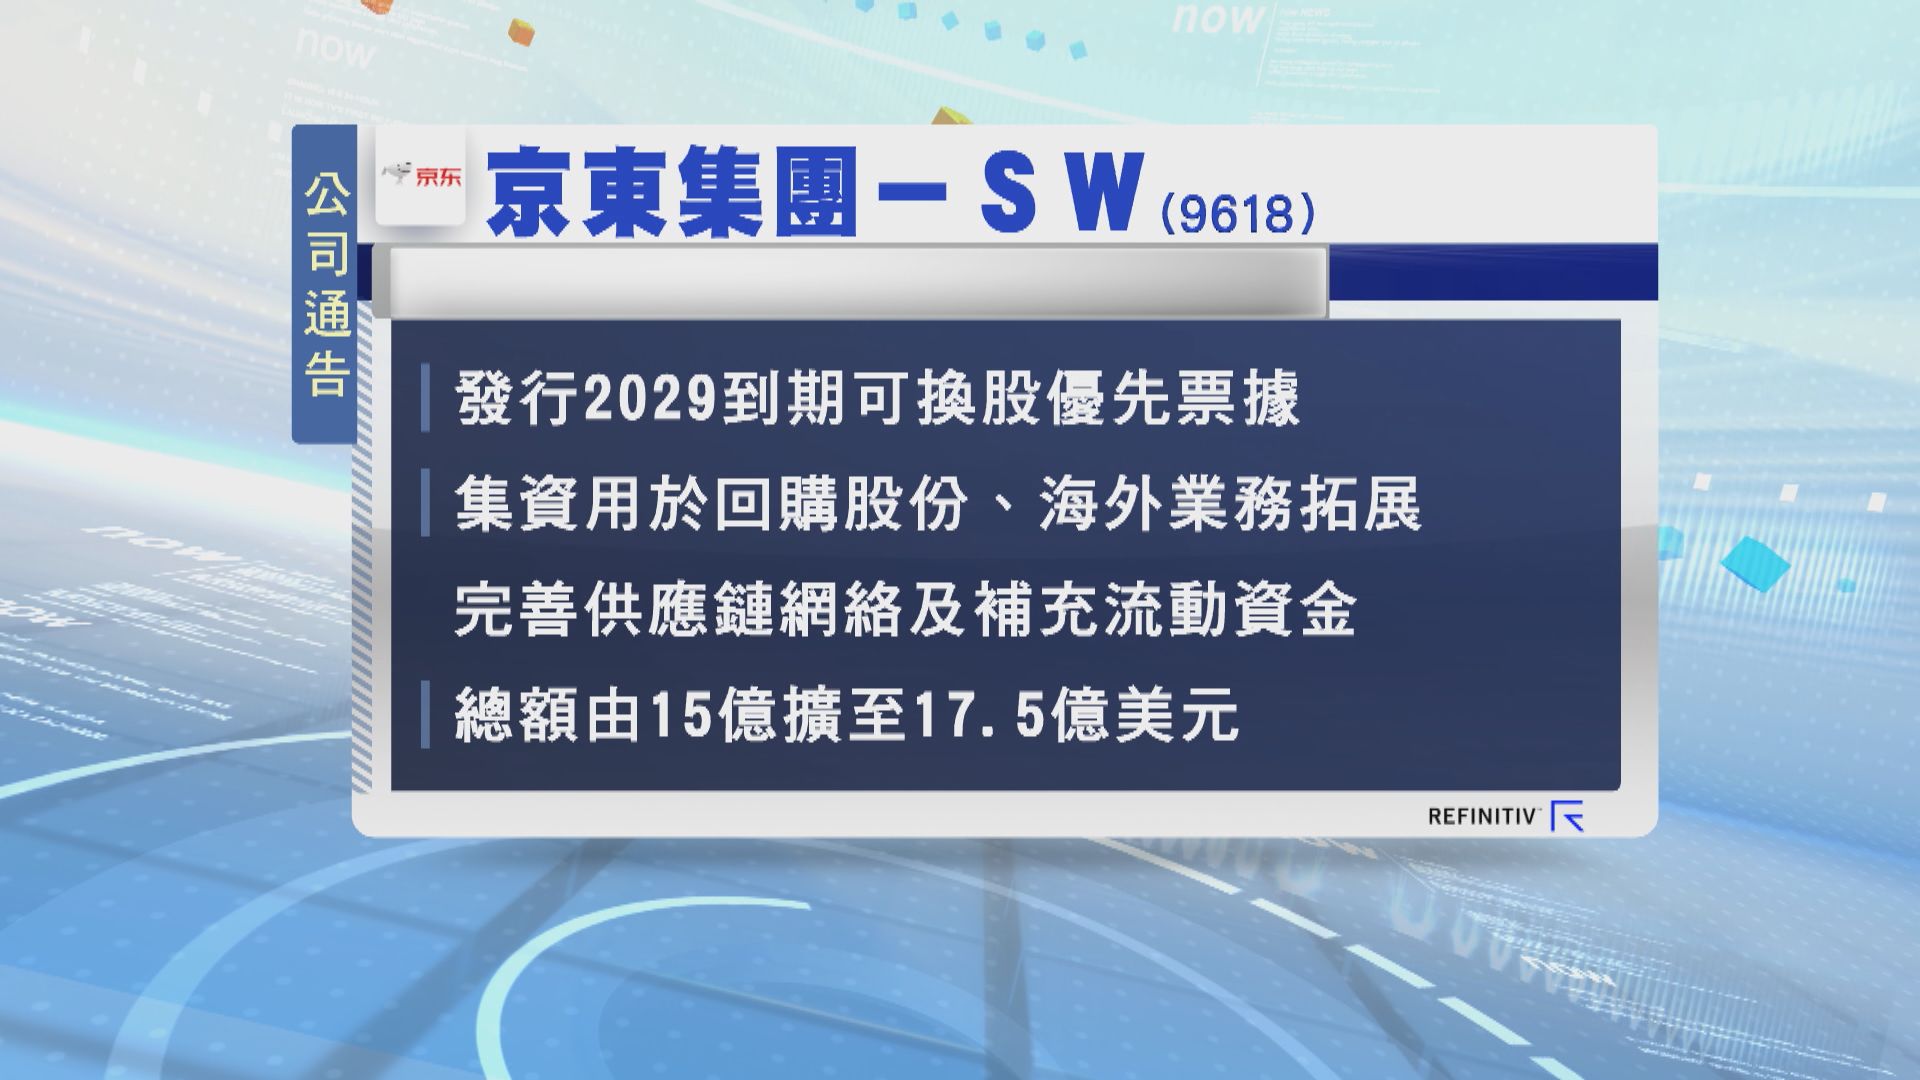 京東擴大可換股優先票據發行規模至17.5億美元